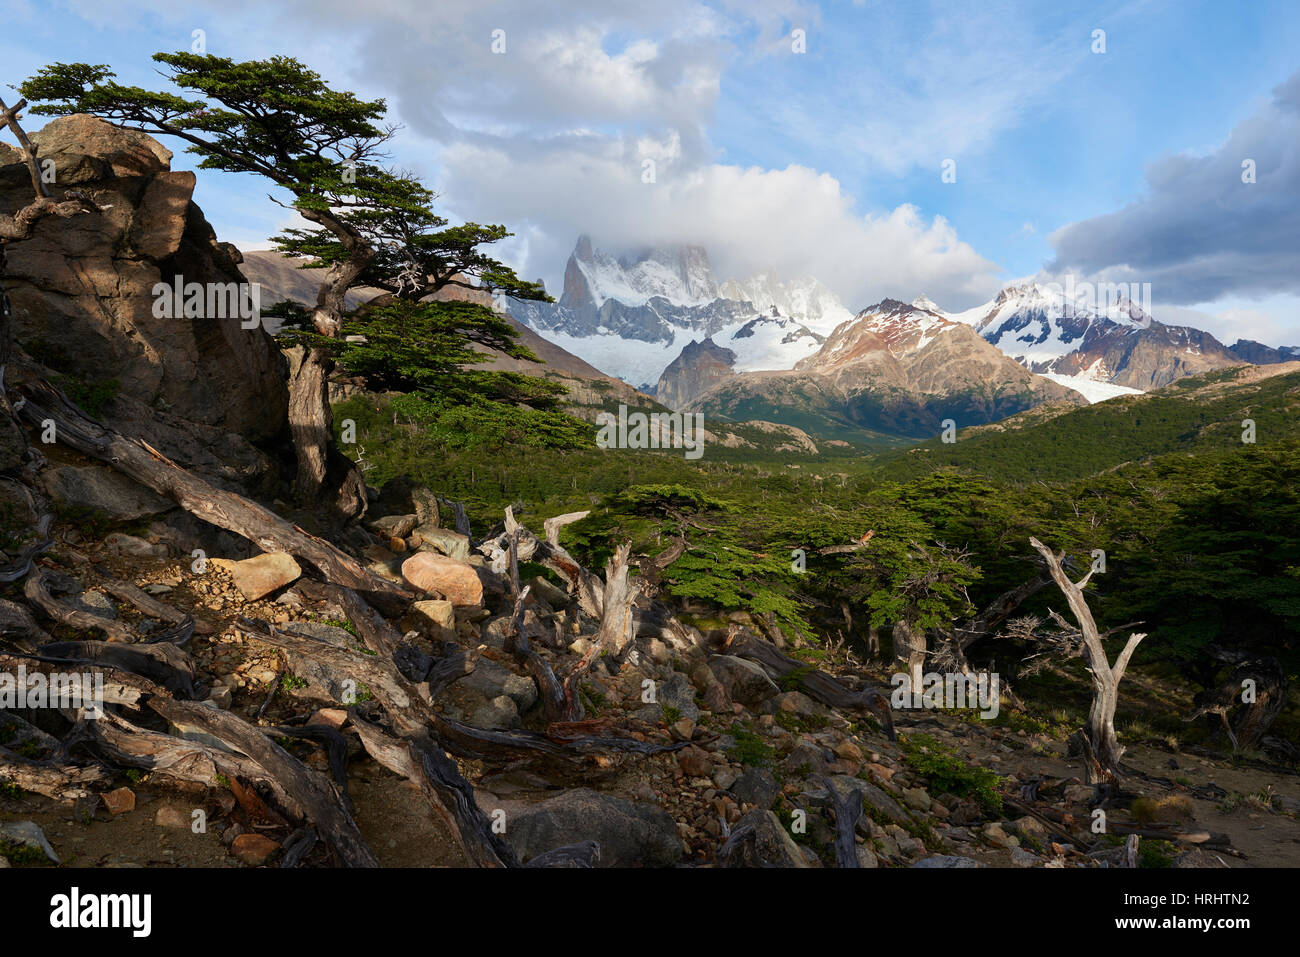 Ampio angolo orizzontale dotato di Monte Fitz Roy in background e albero in primo piano, Patagonia, Argentina Foto Stock